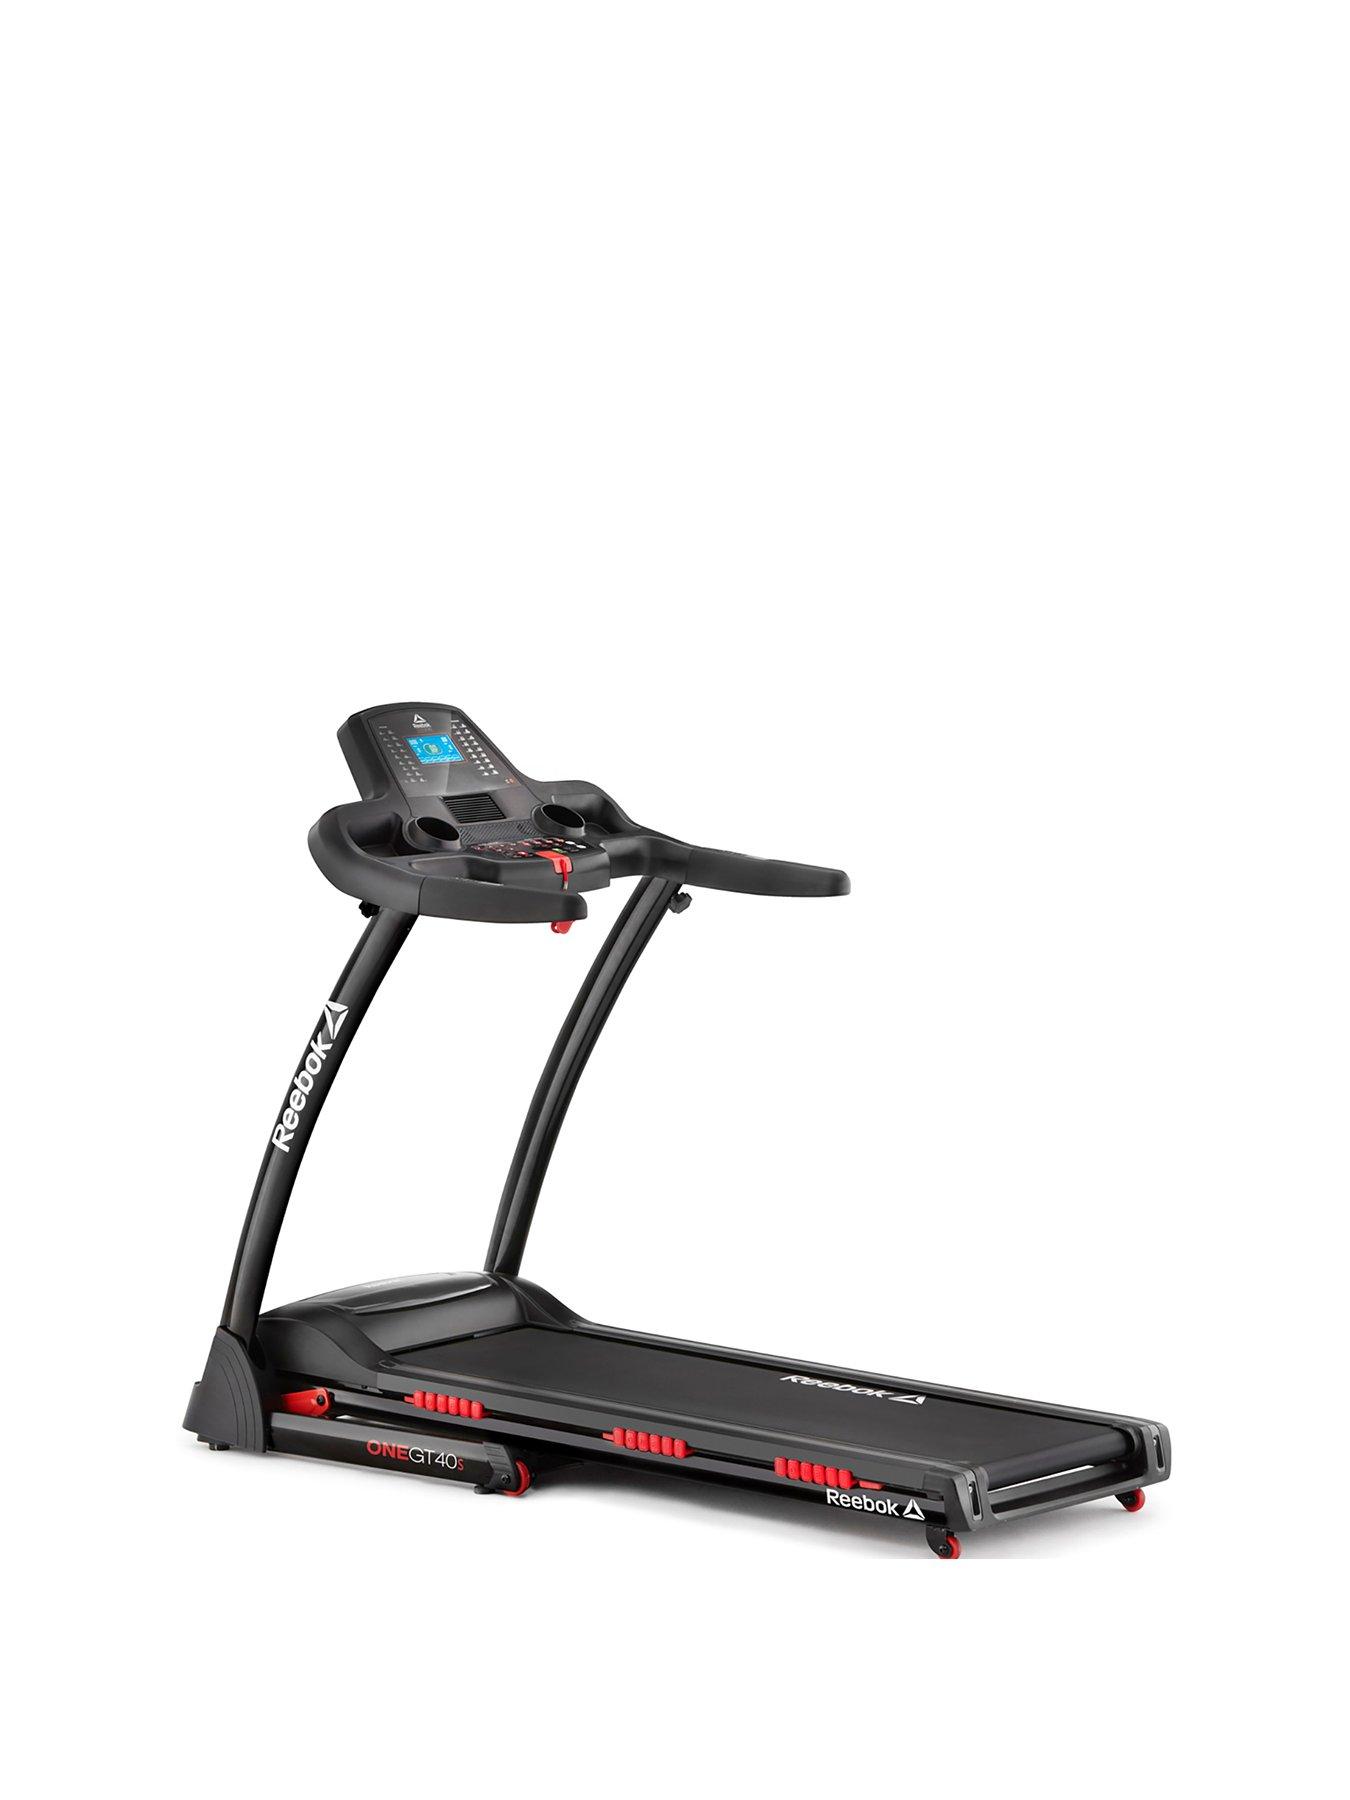 Reebok GT40S ONE Series Treadmill 